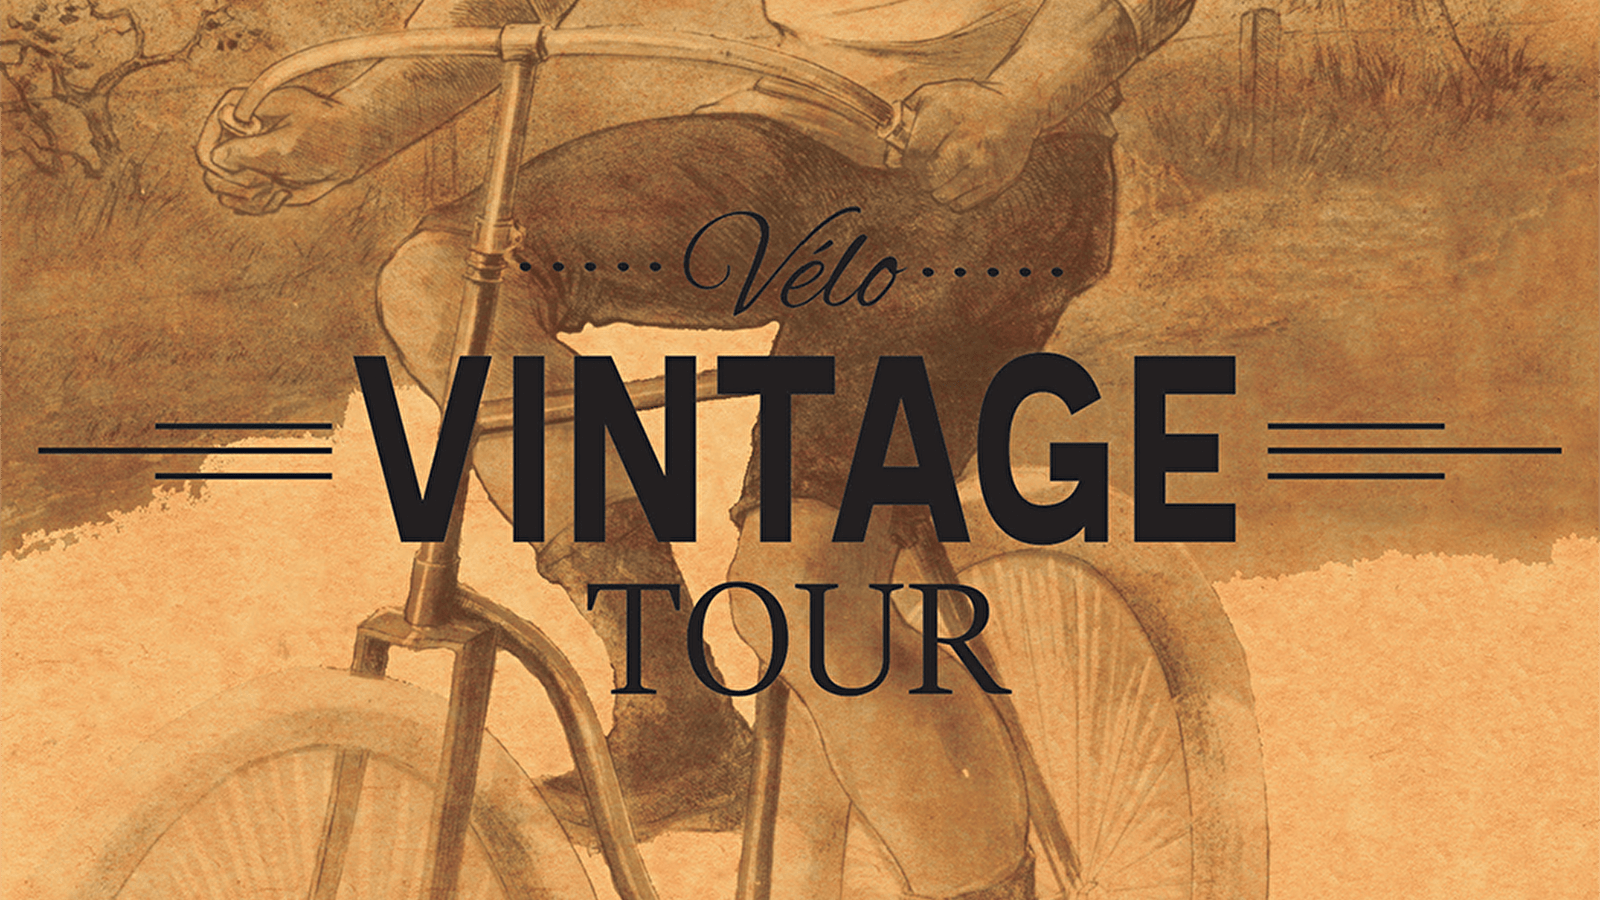 Vélo Vintage Tour